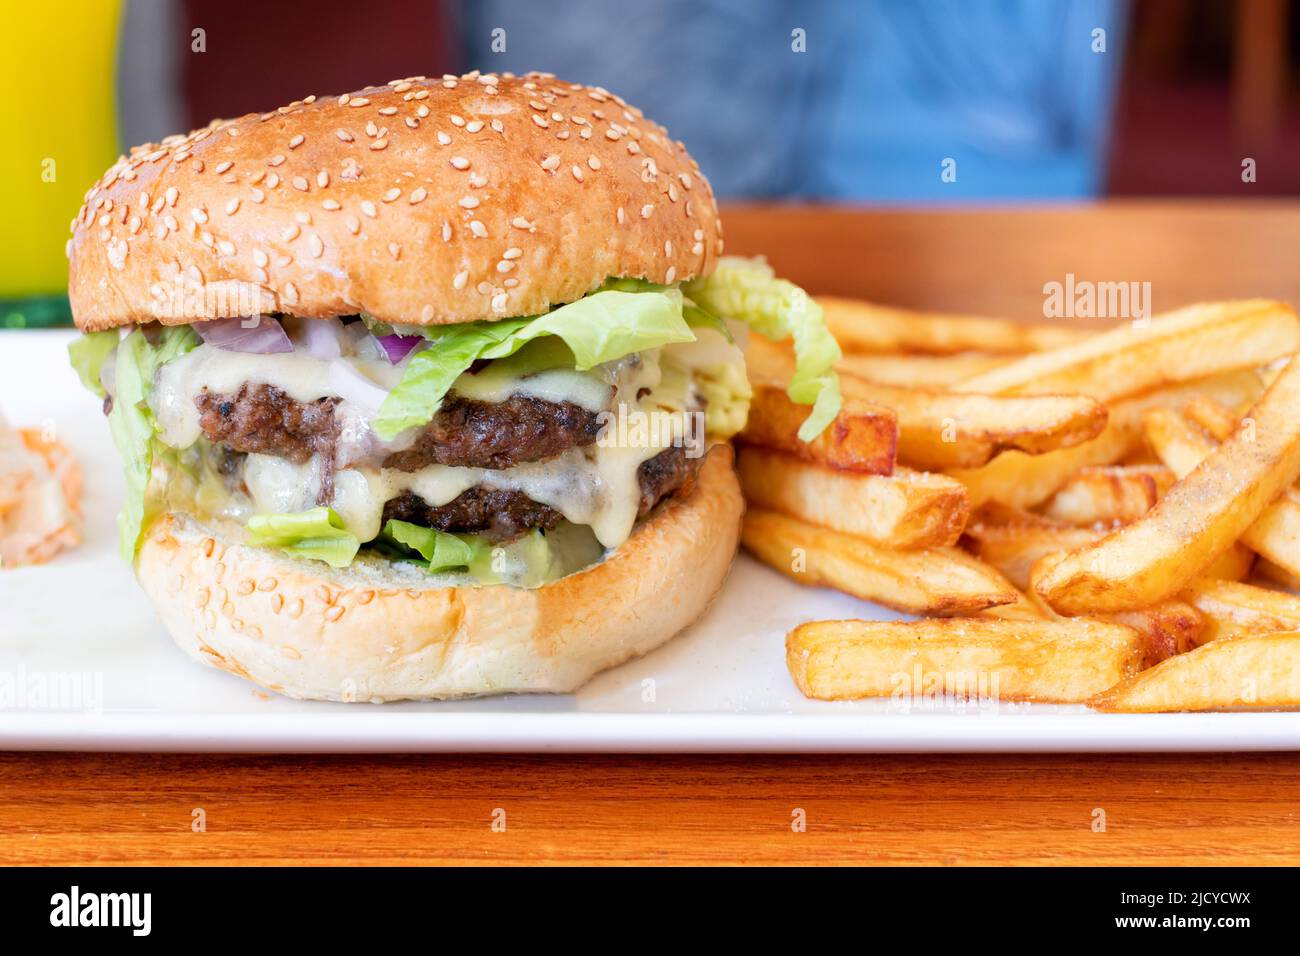 Un Brewers Fayre Big Stack Burger servito in una delle catene di ristoranti del regno unito con patatine fritte. Un'opzione gustosa ma ad alto contenuto calorico Foto Stock